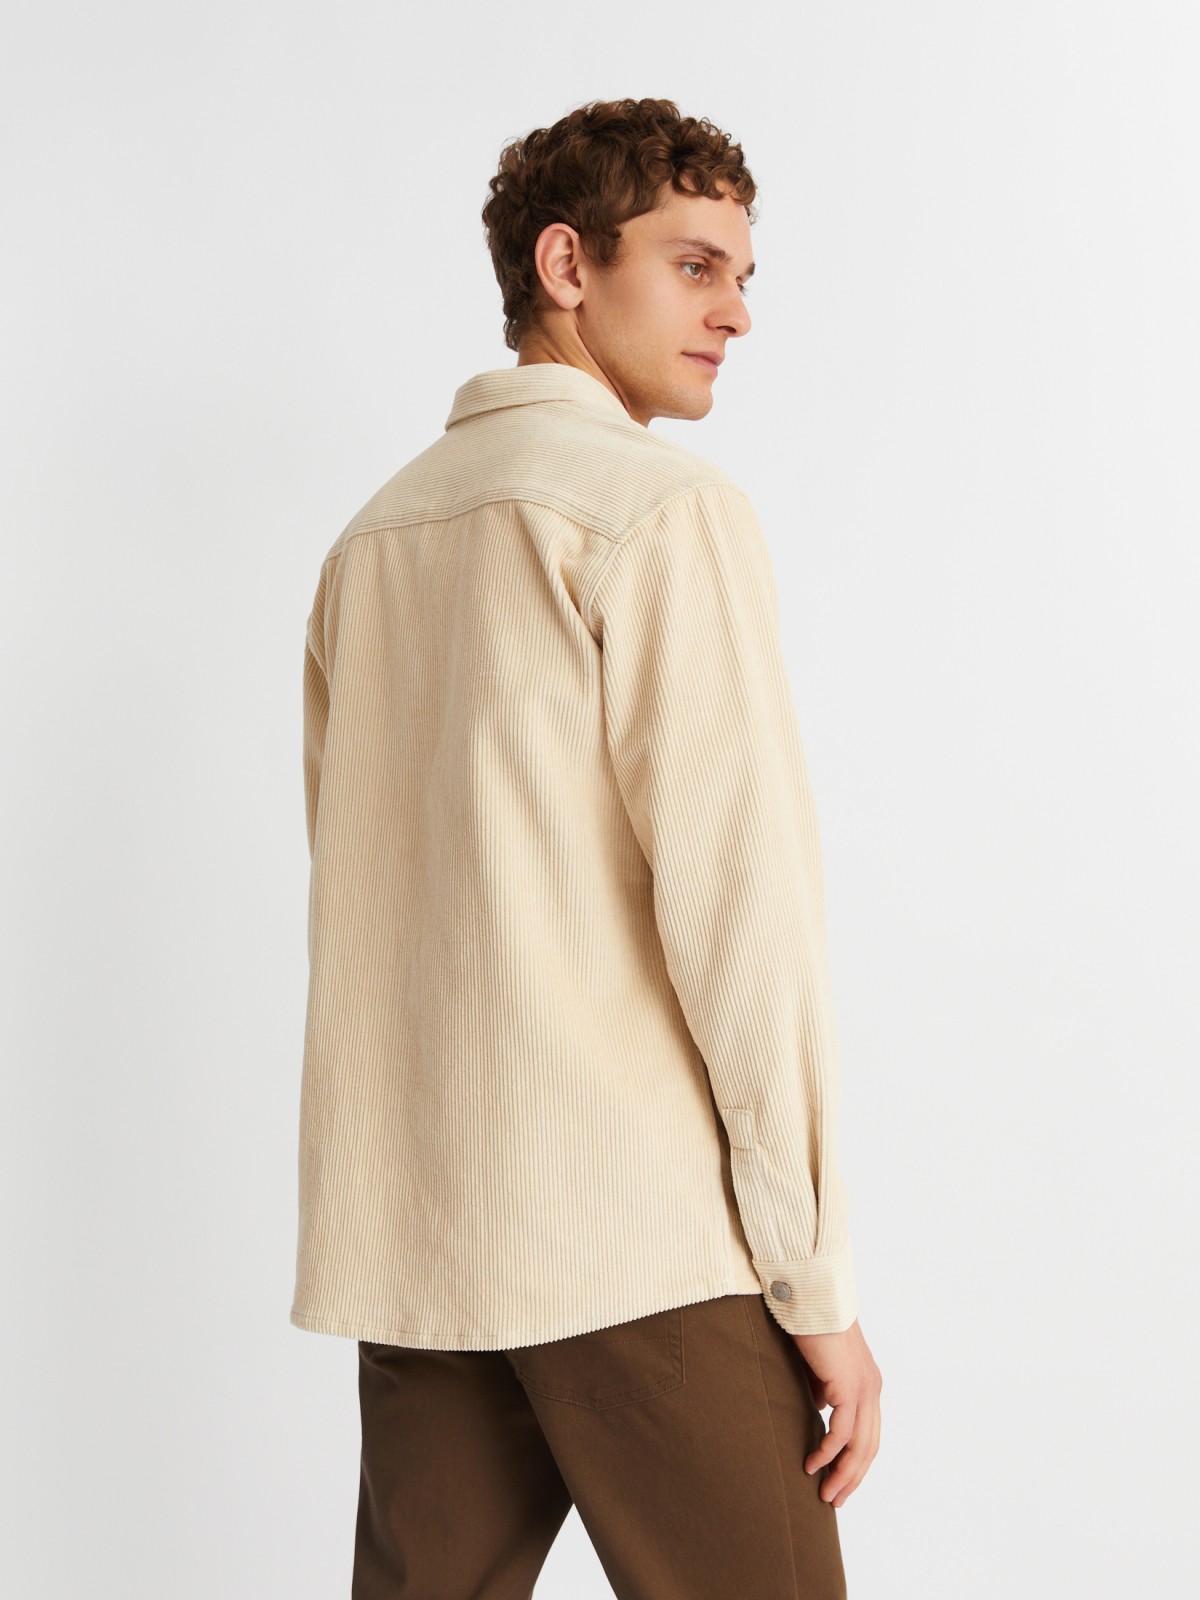 Вельветовая куртка-рубашка из хлопка с длинным рукавом zolla 21342214R041, цвет горчичный, размер M - фото 5